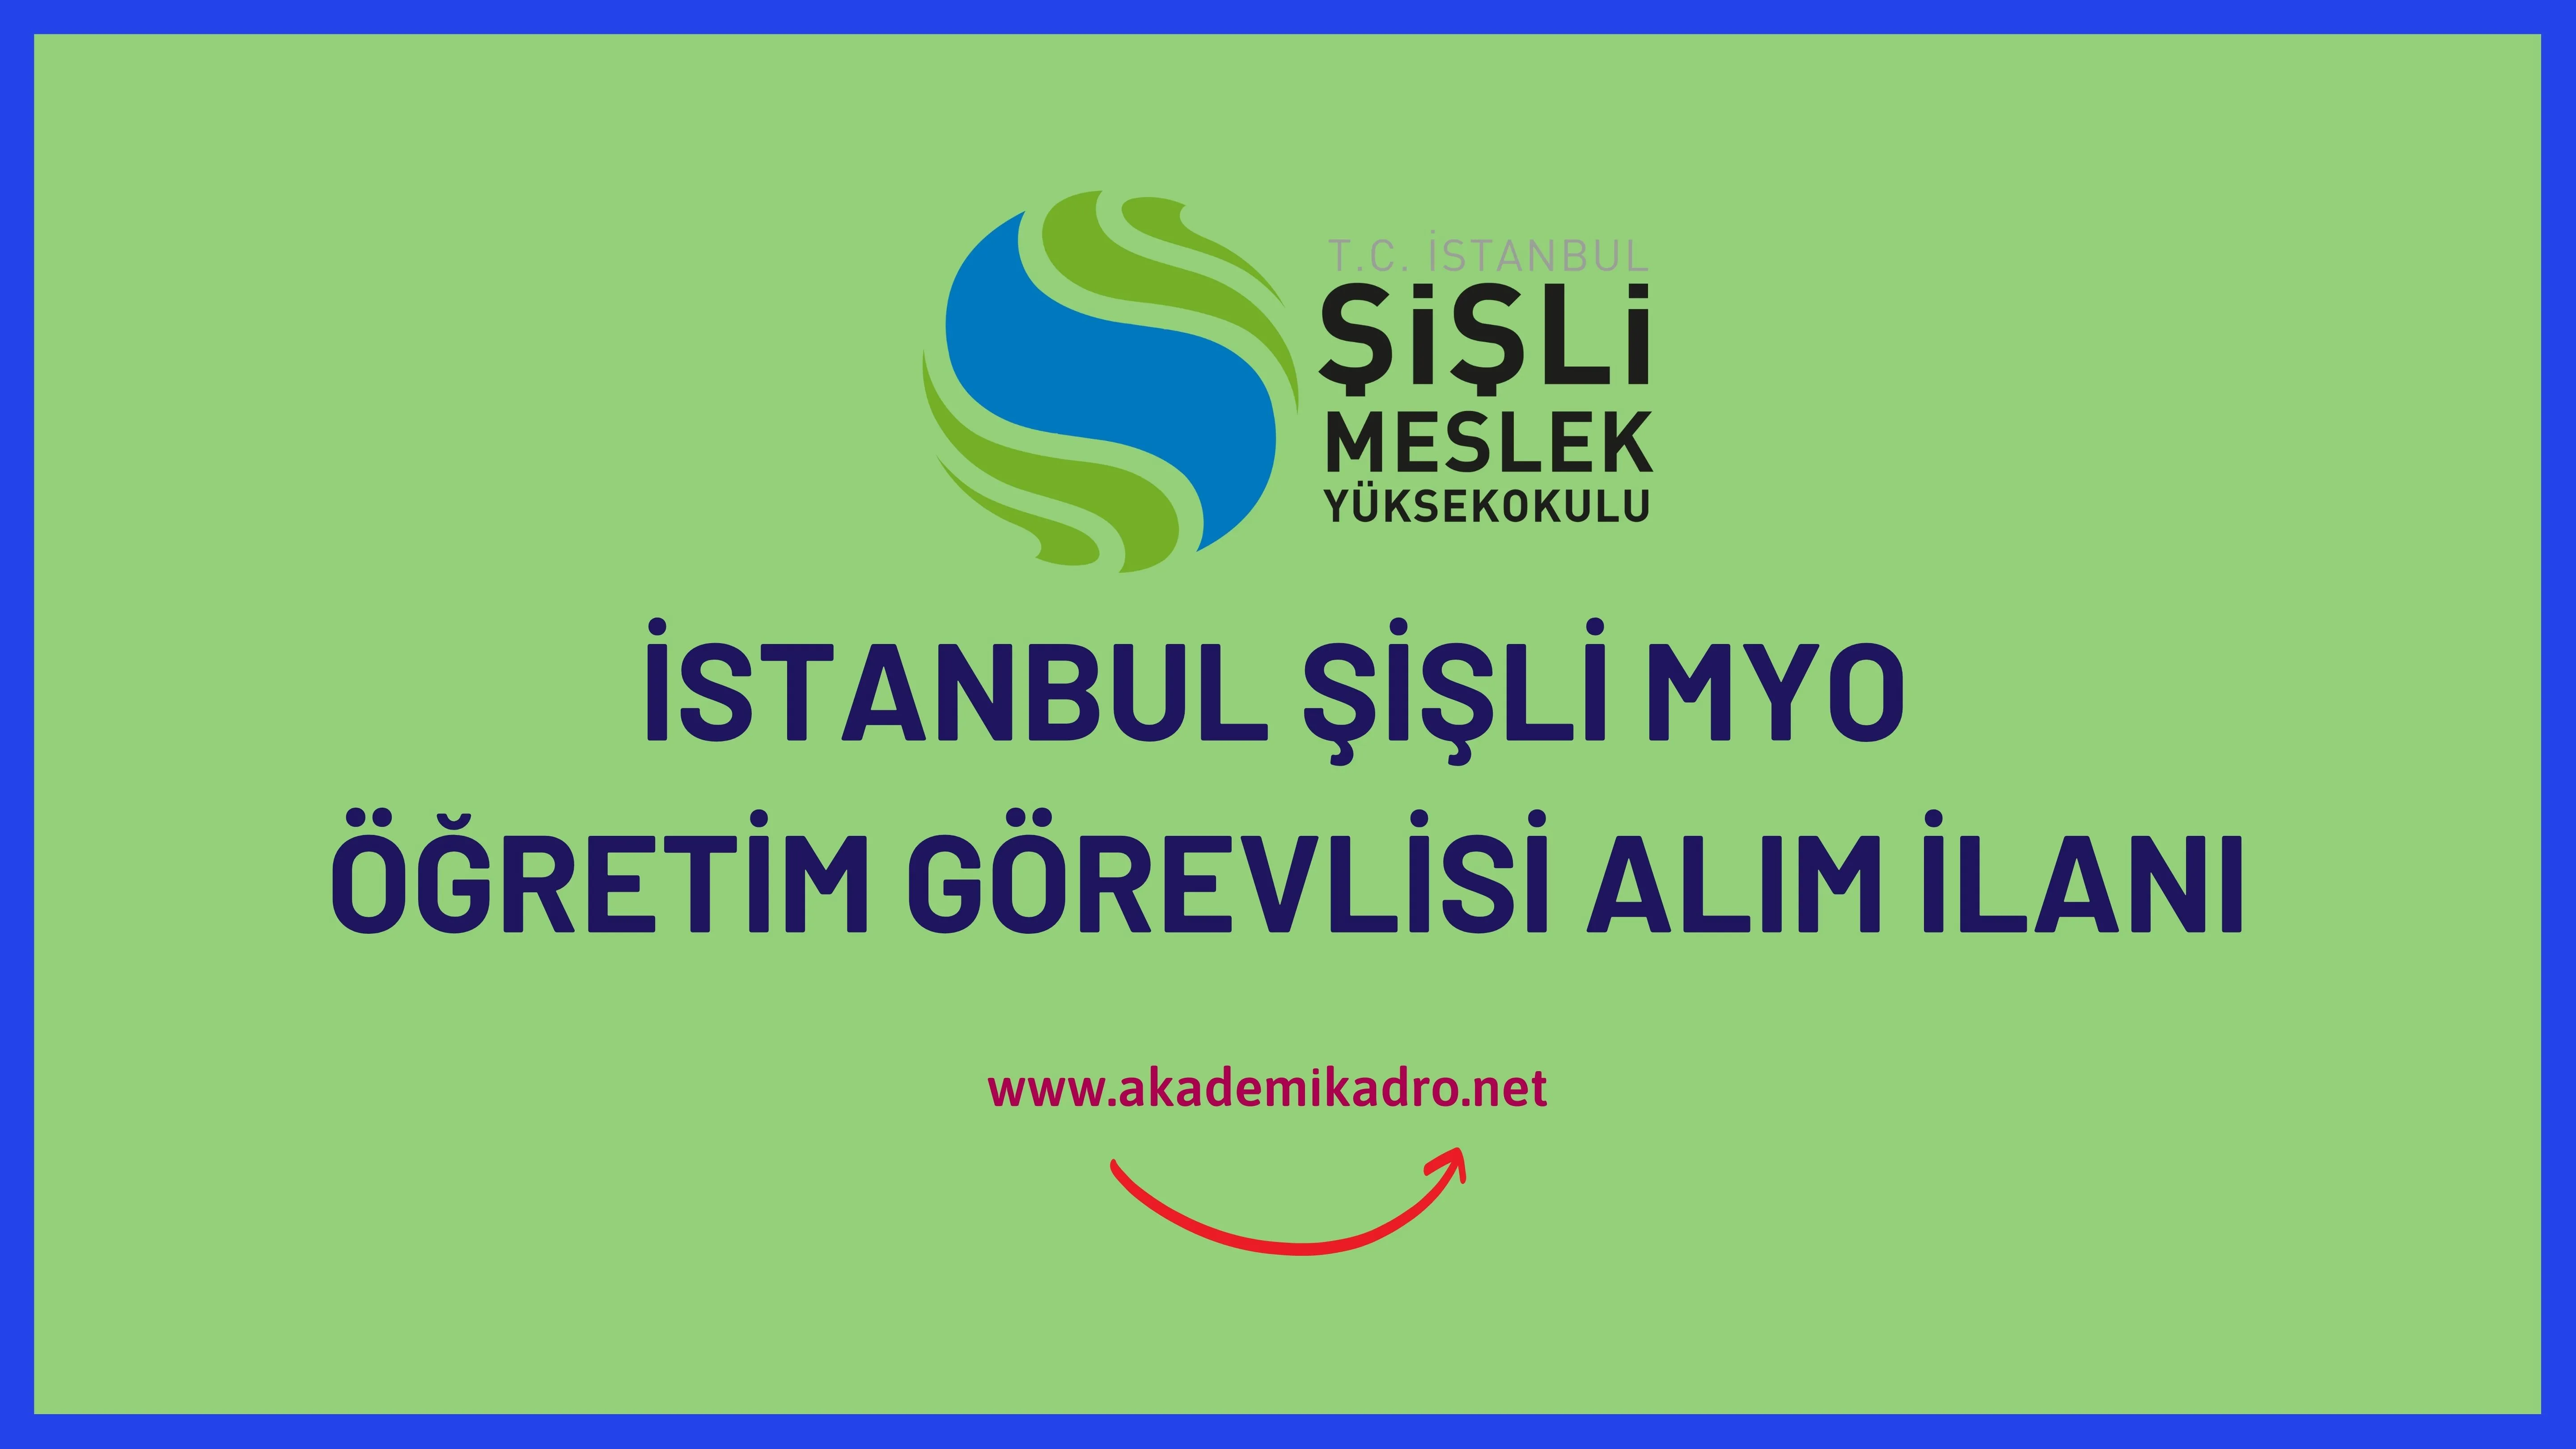 İstanbul Şişli Meslek Yüksekokulu çeşitli branşlarda 11 Öğretim görevlisi alacak. Son başvuru tarihi 24 Mart 2023.